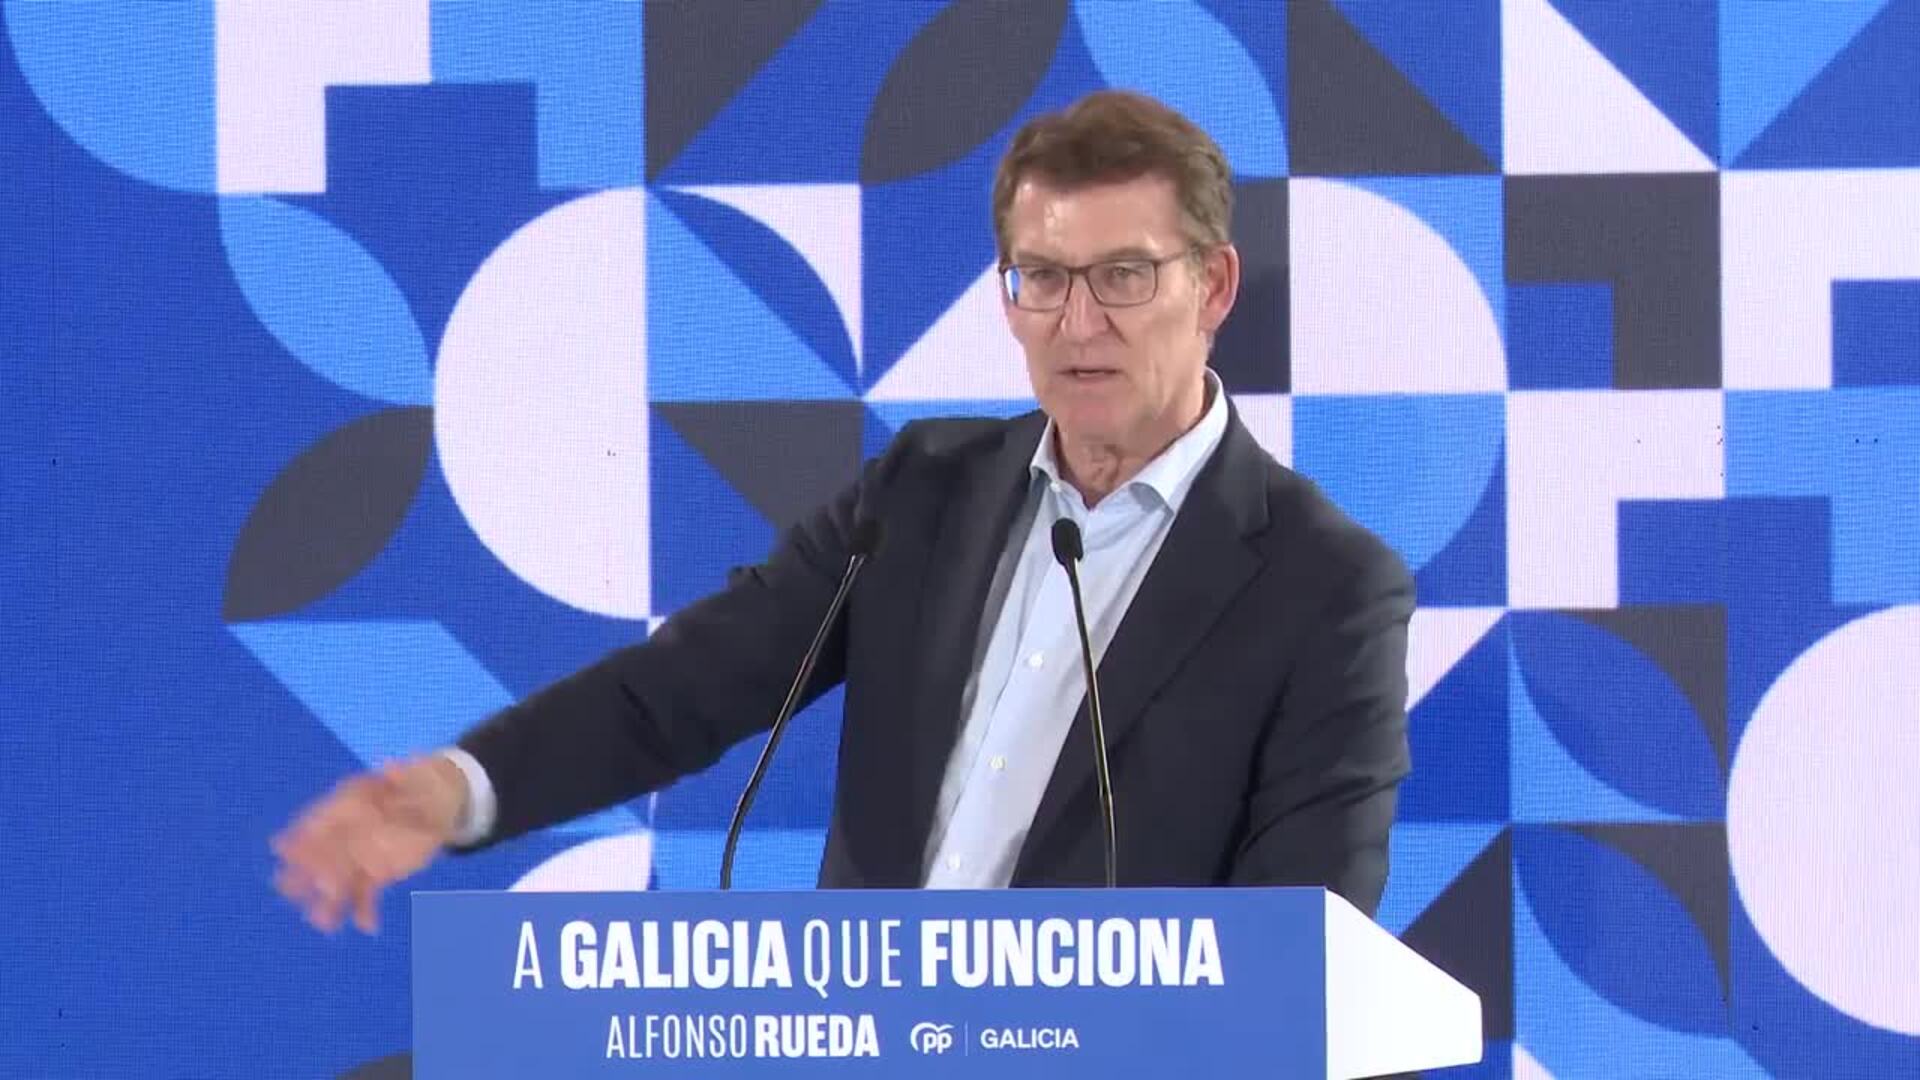 Feijóo acusa a Sánchez de llevar al PSOE a la "irrelevancia" al "estrellarse" el 18F